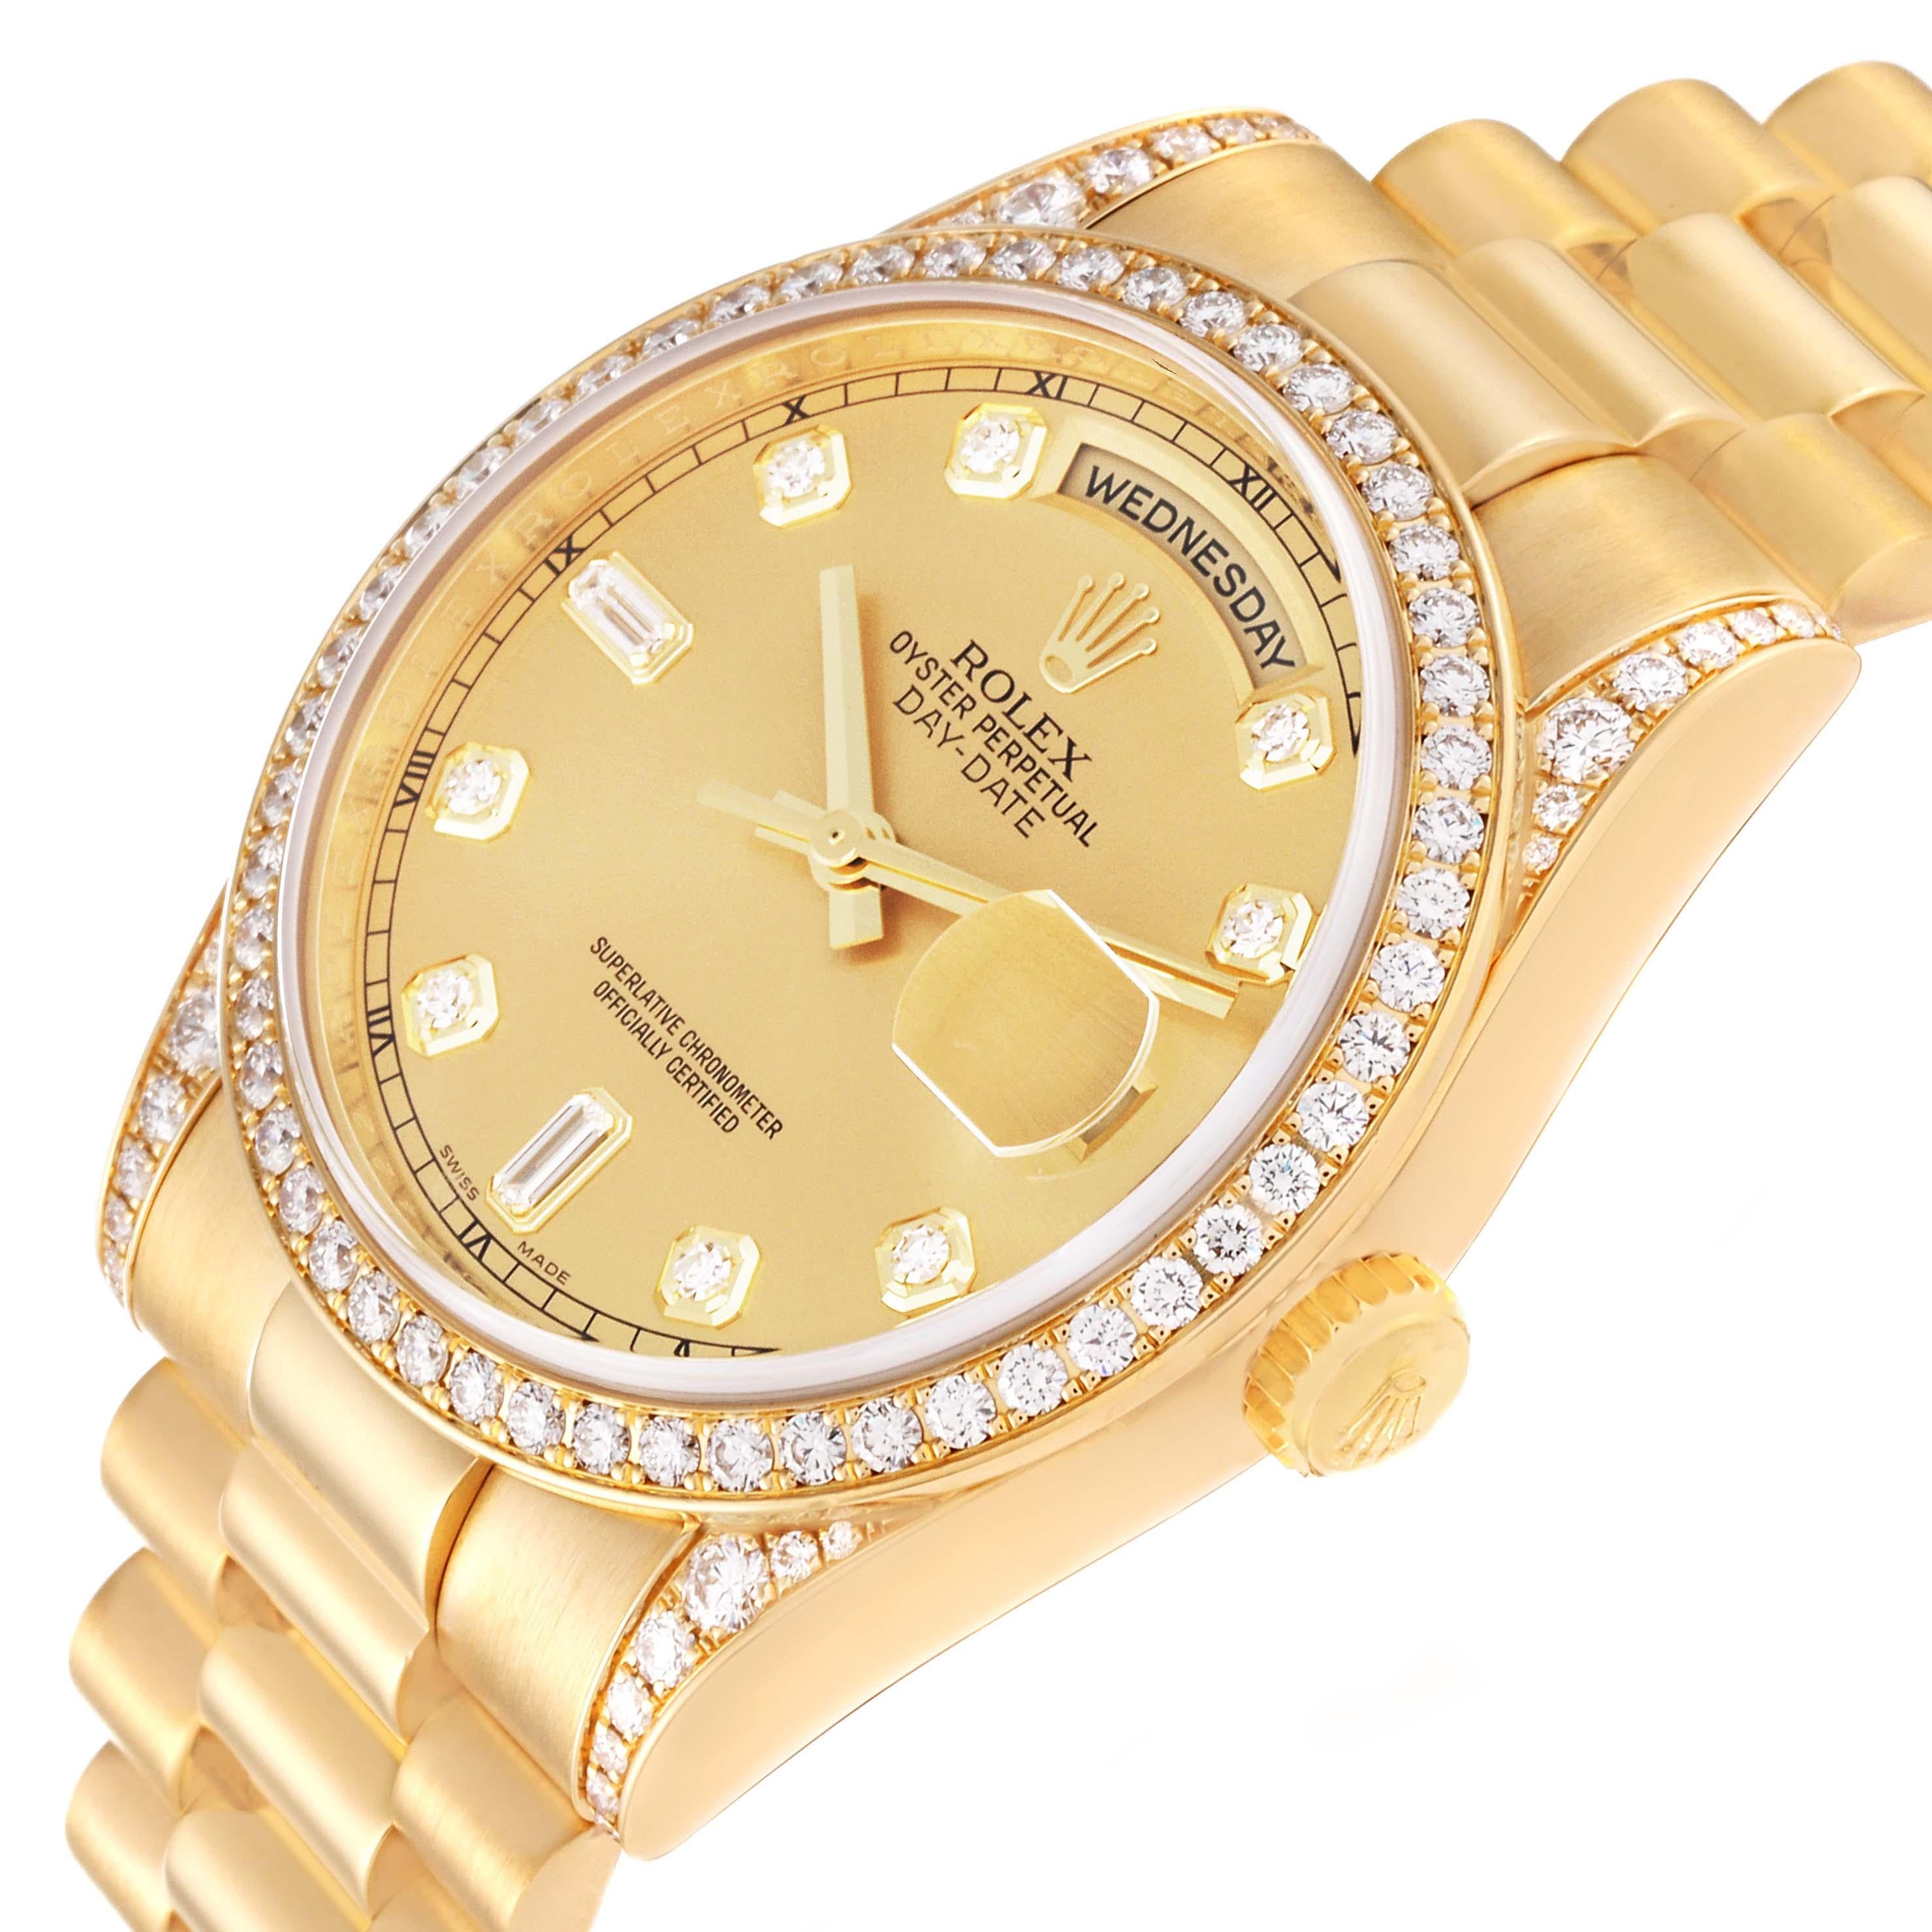  Rolex President Day-Date 36 Montre homme en or jaune avec diamants 118388 Pour hommes 